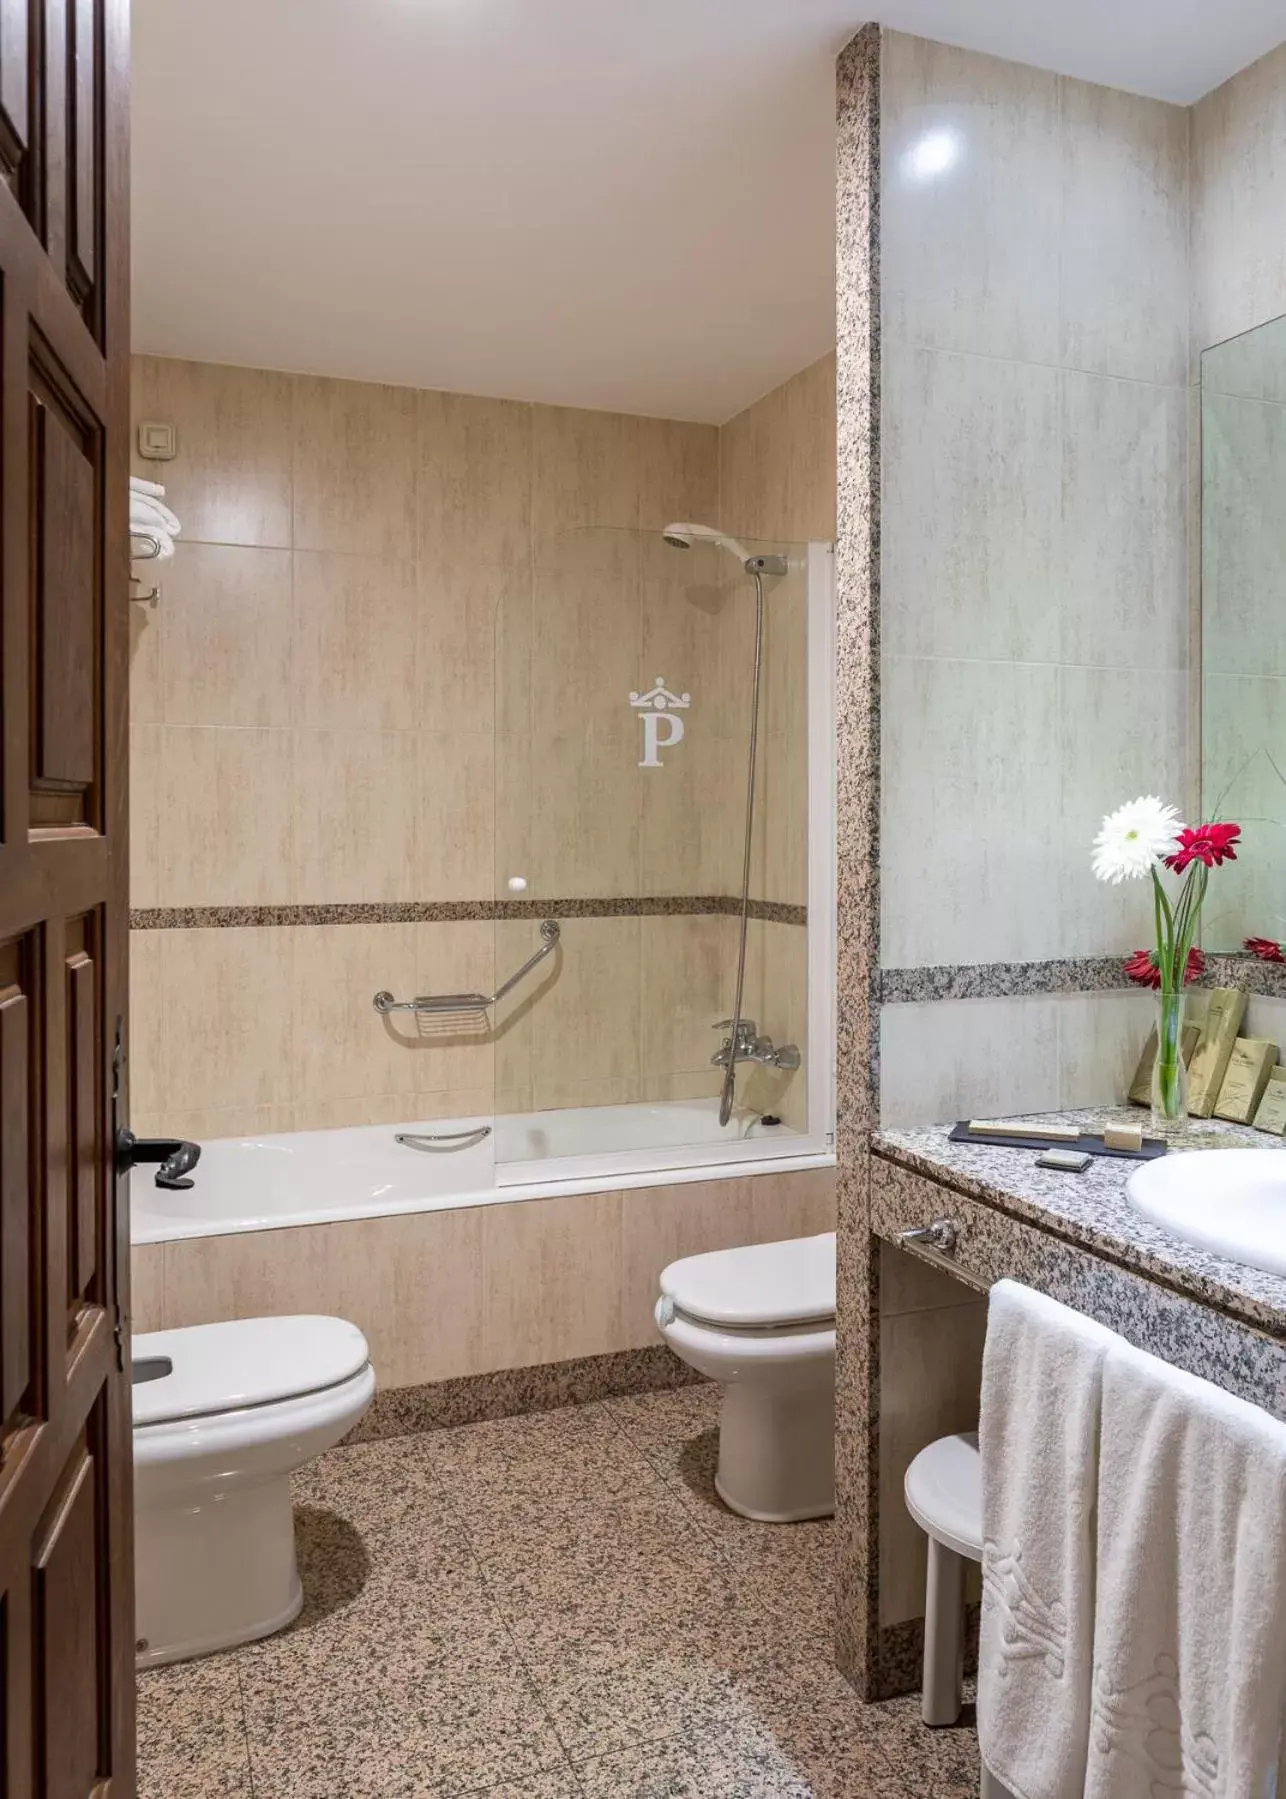 Property building, Bathroom in Parador de Monforte de Lemos